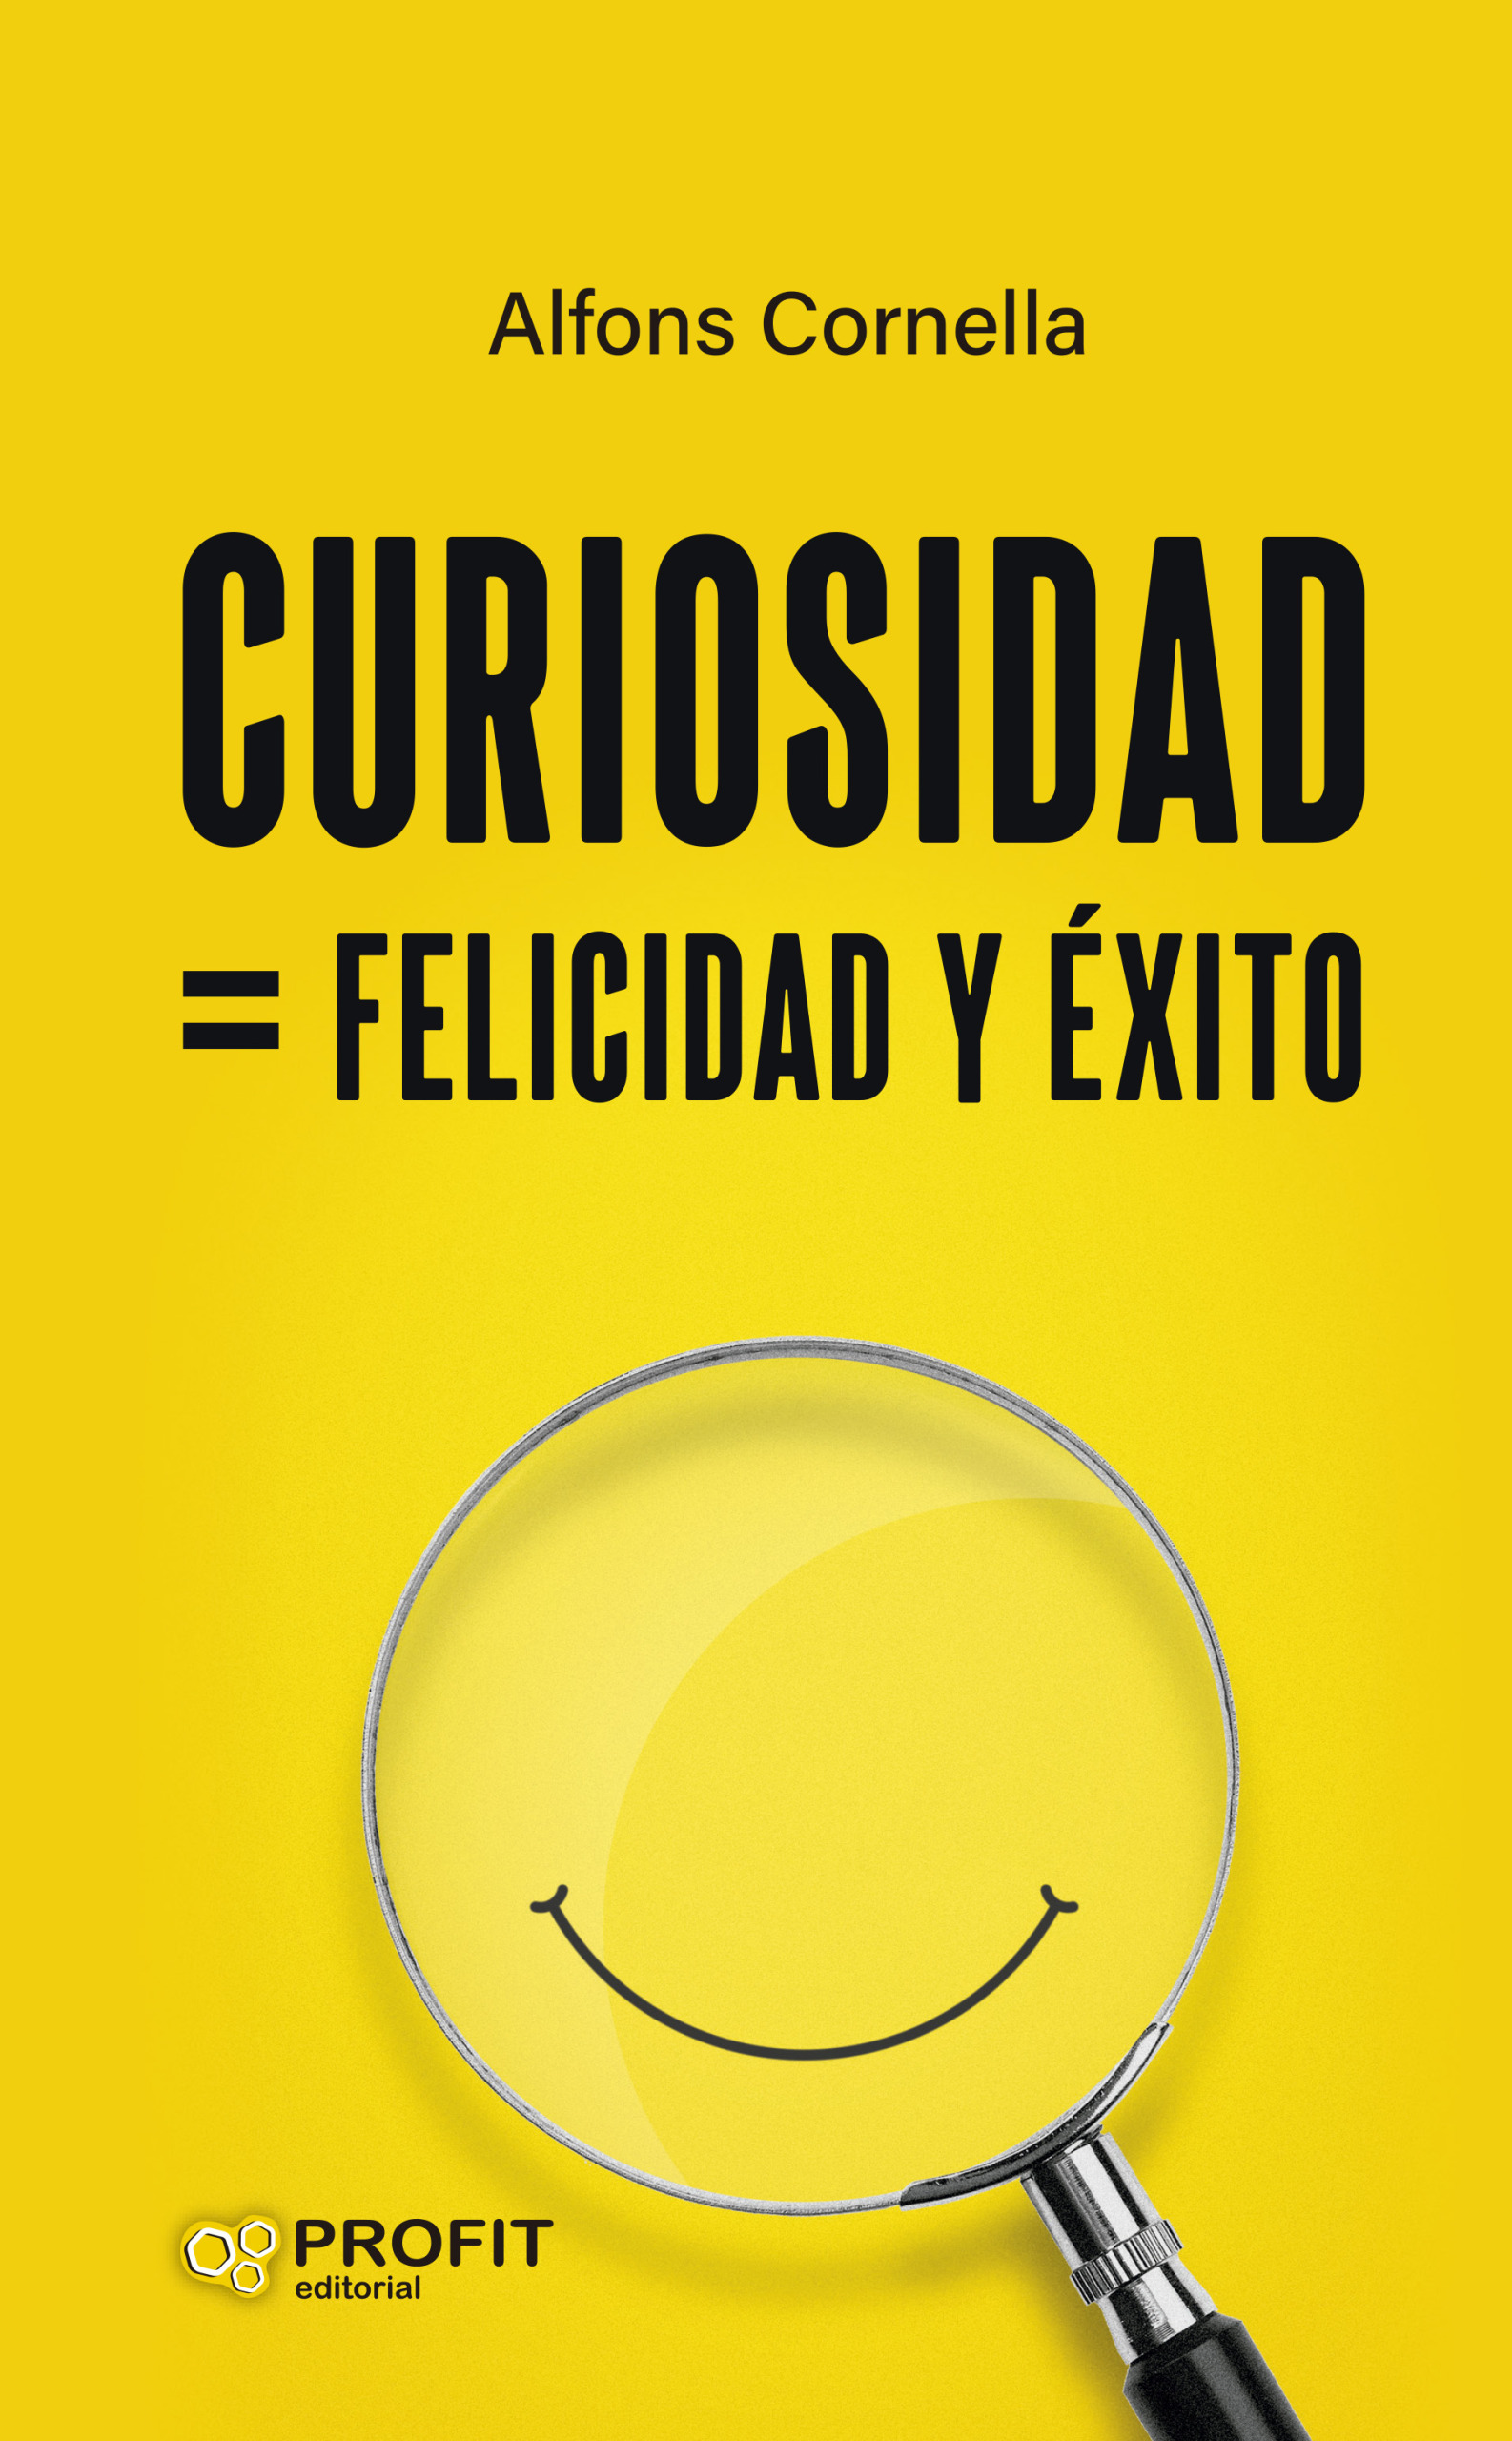 Curiosidad | Alfons Cornella | Libros de empresa y negocios